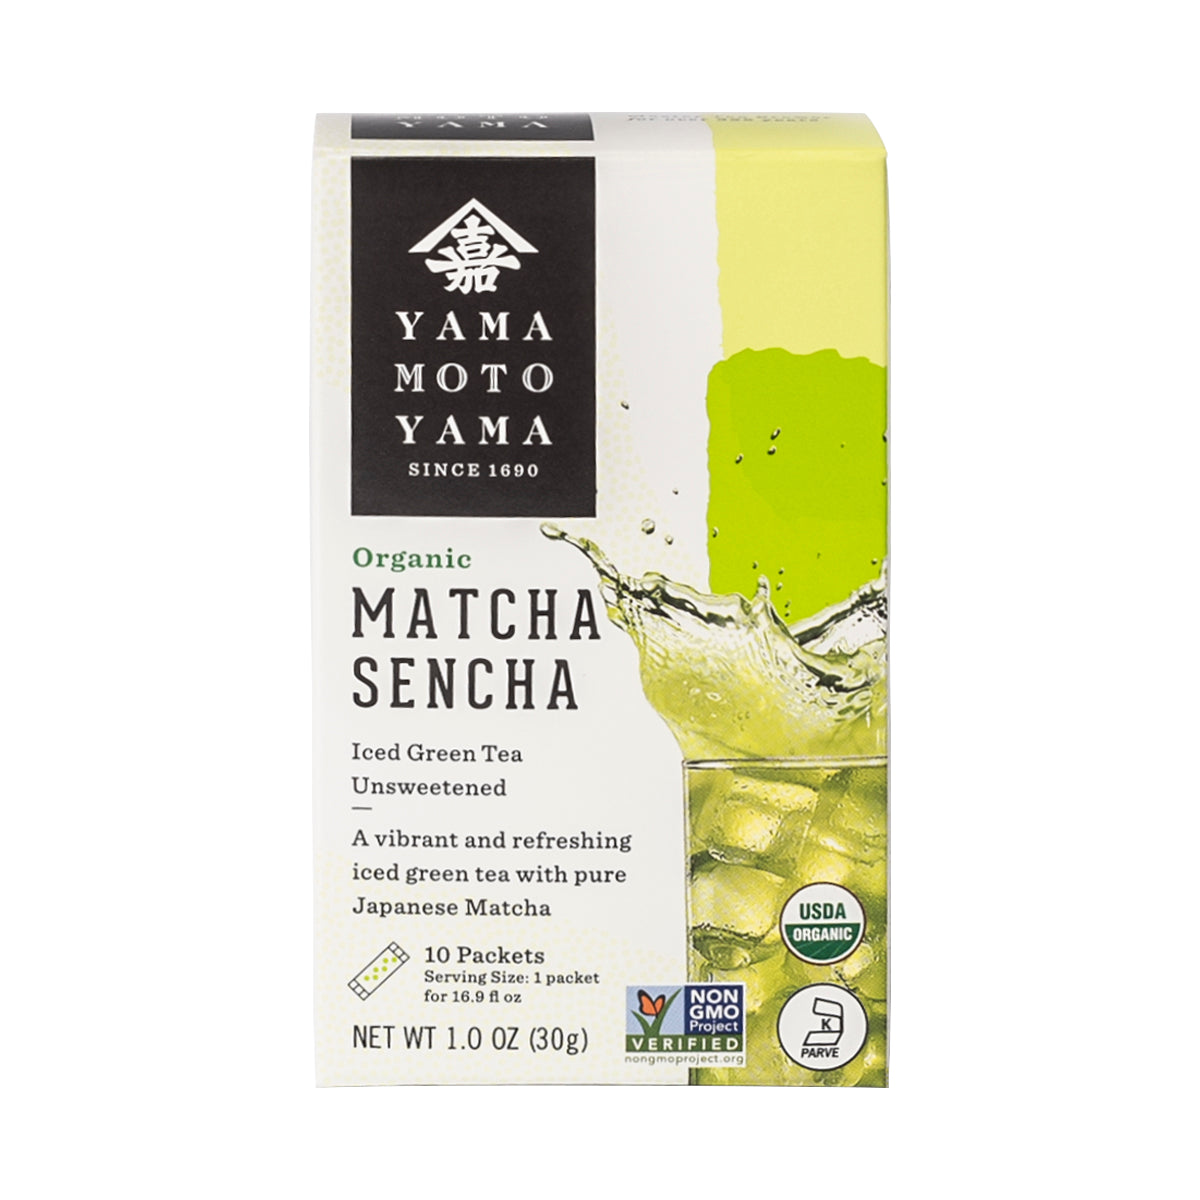 Organic Matcha Sencha Iced Green Tea